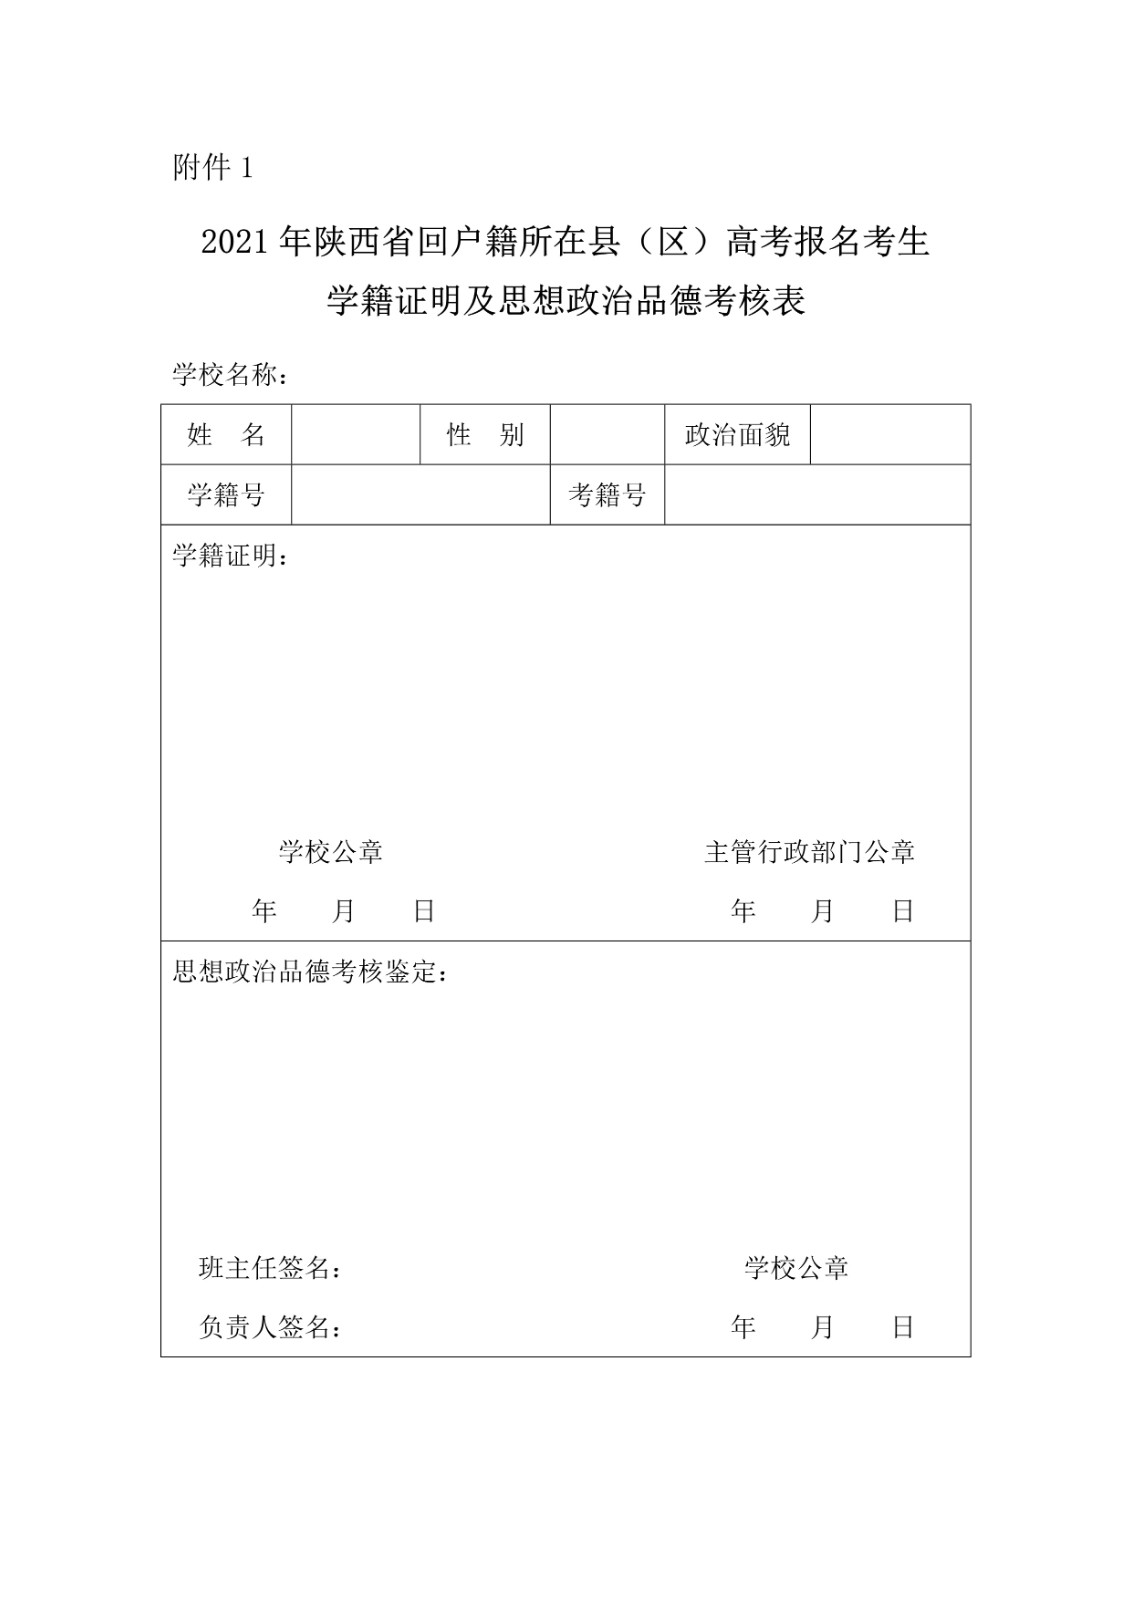 陕西省教育考试院 陕西省招生委员会办公室关于做好2021年普通高等学校招生考试报名工作的通知